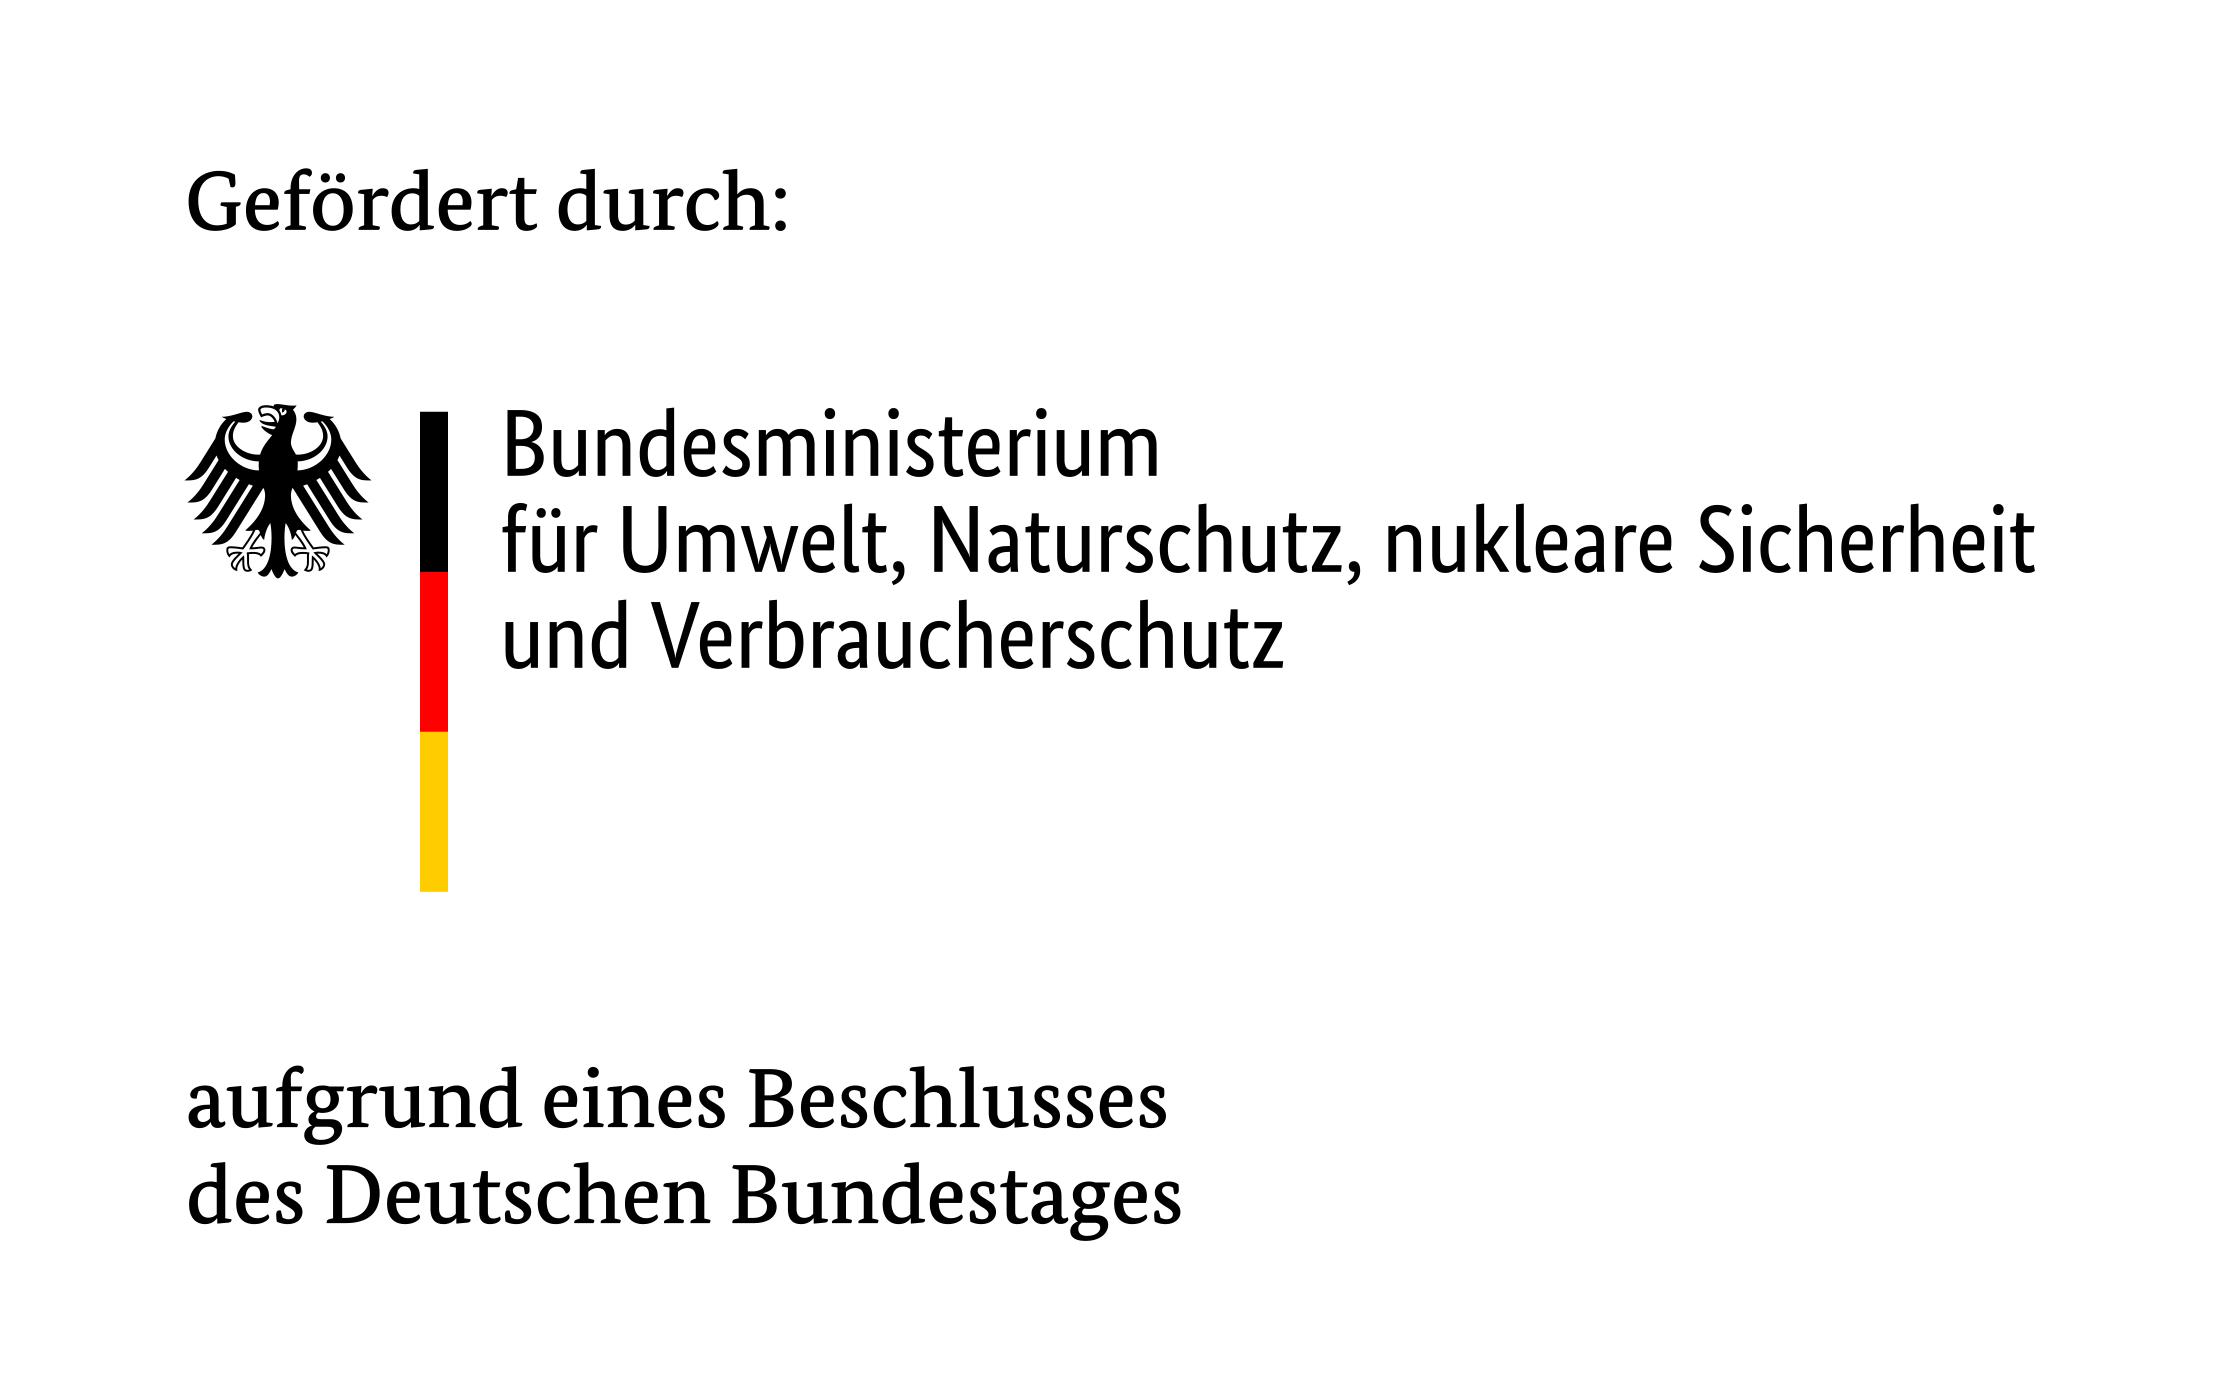 Gefördert durch: Bundesministerium für Umwelt, Naturschutz, nukleare Sicherheit und Verbraucherschutz aufgrund eines Beschlusses des Deutschen Bundestages